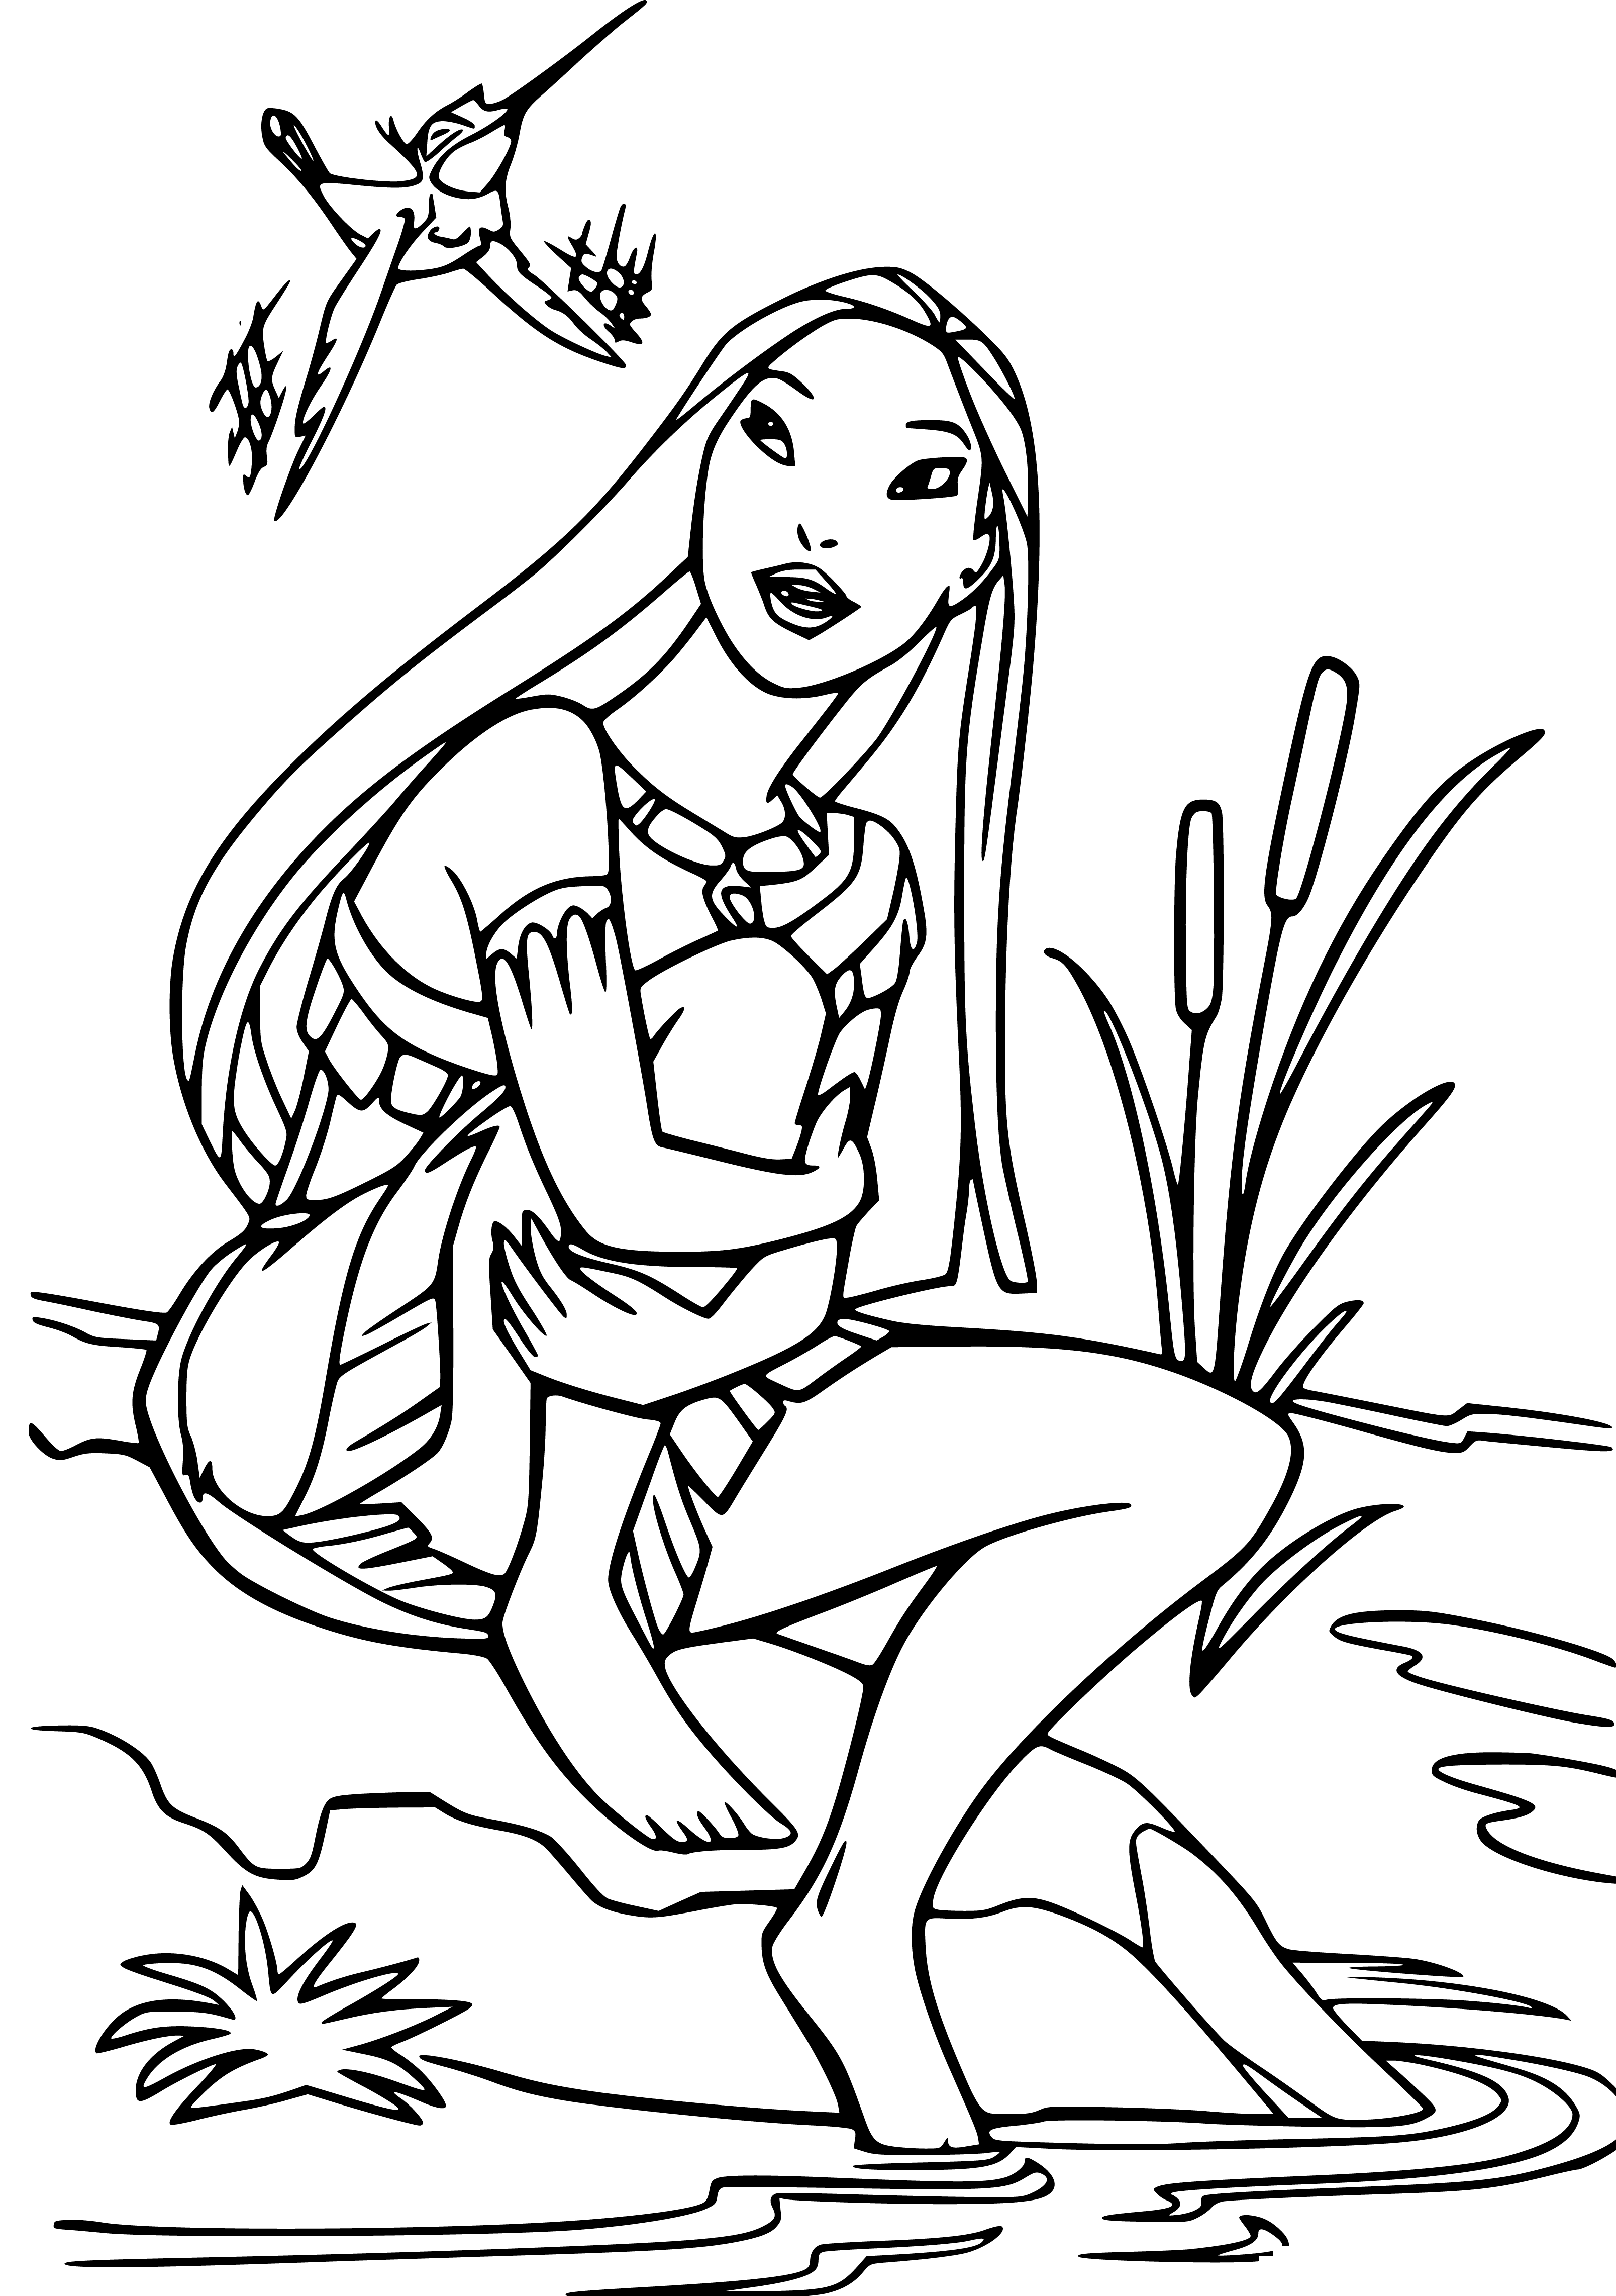 Pocahantos Sketching to Color - SheetalColor.com